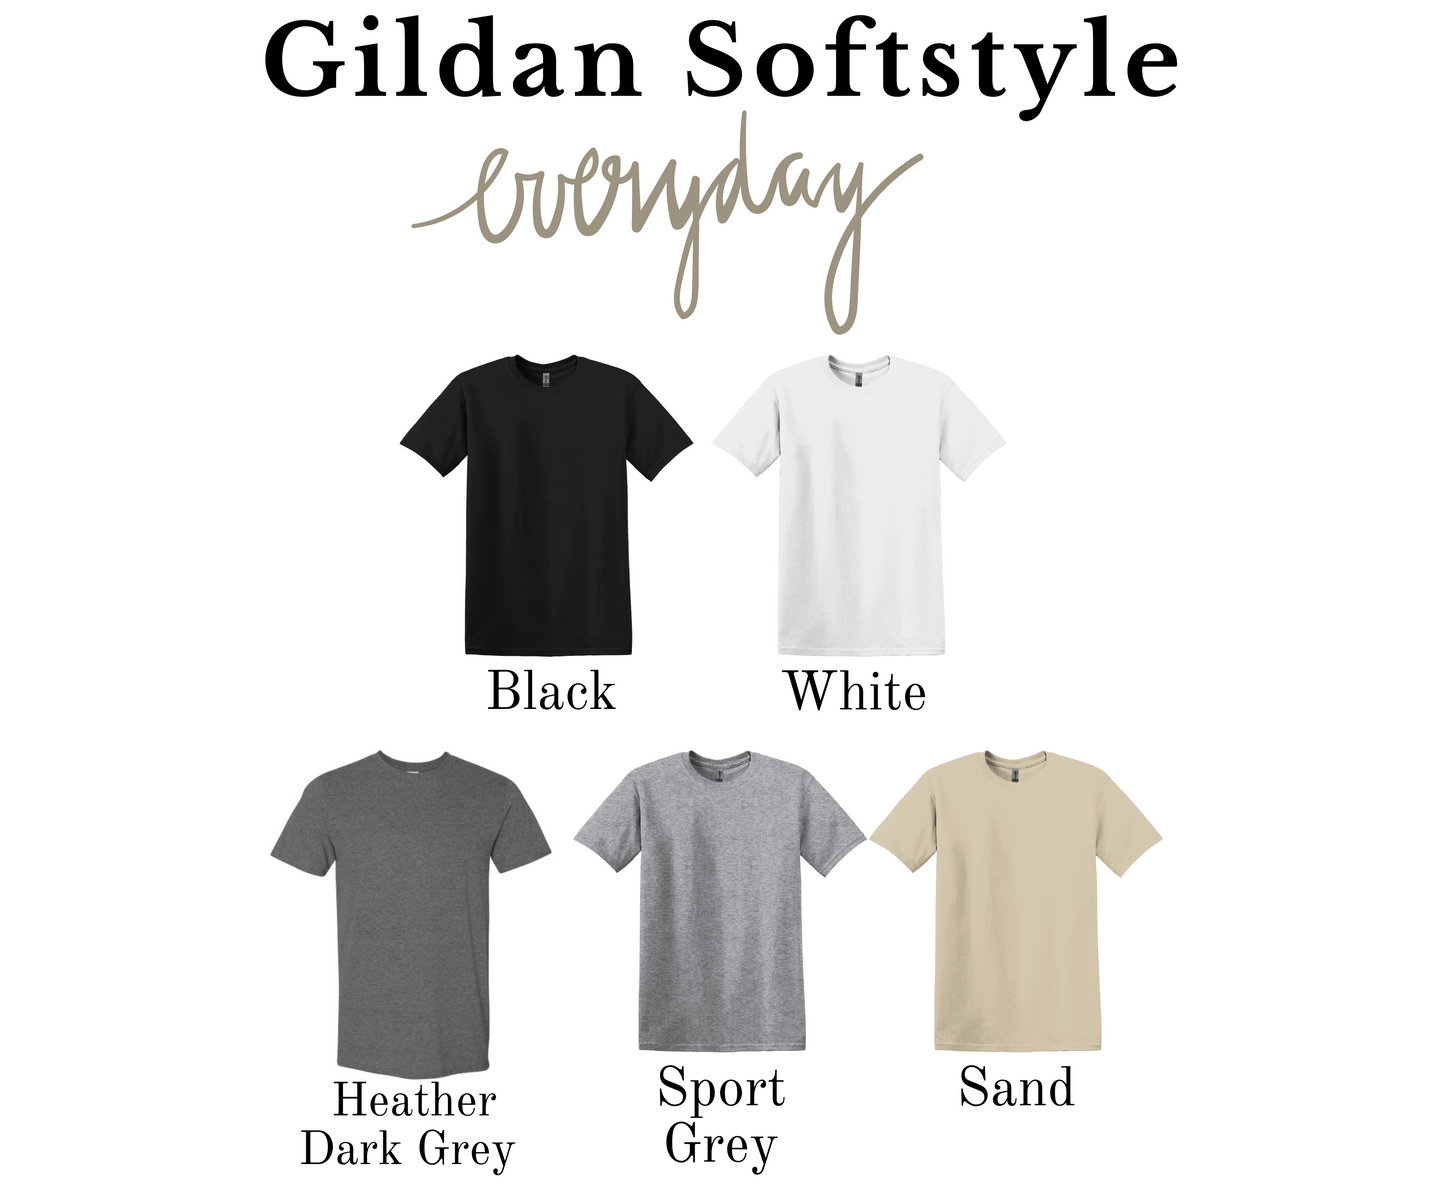 Vintage Christmas and CO Gildan Softstyle T-shirt